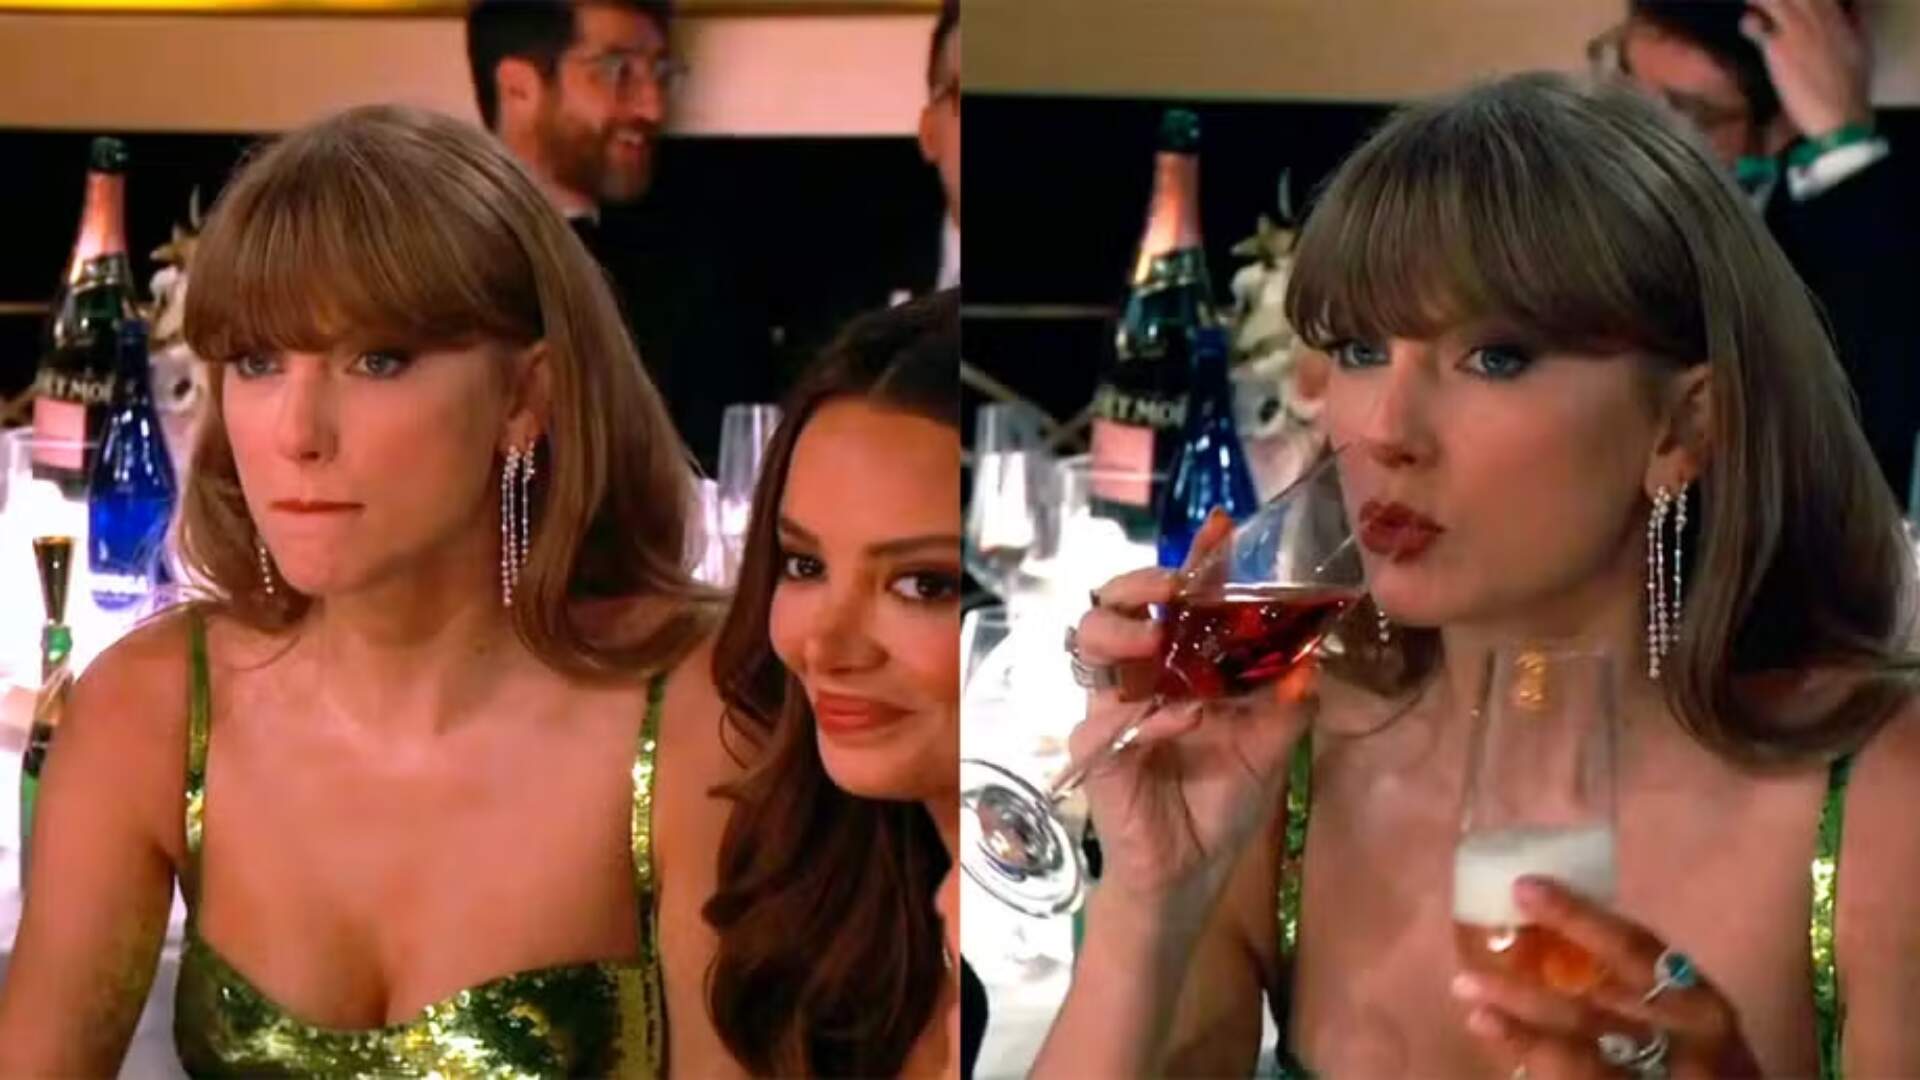 Apresentador do Globo de Ouro coloca Taylor Swift em situação constrangedora com piada; entenda o que rolou - Metropolitana FM